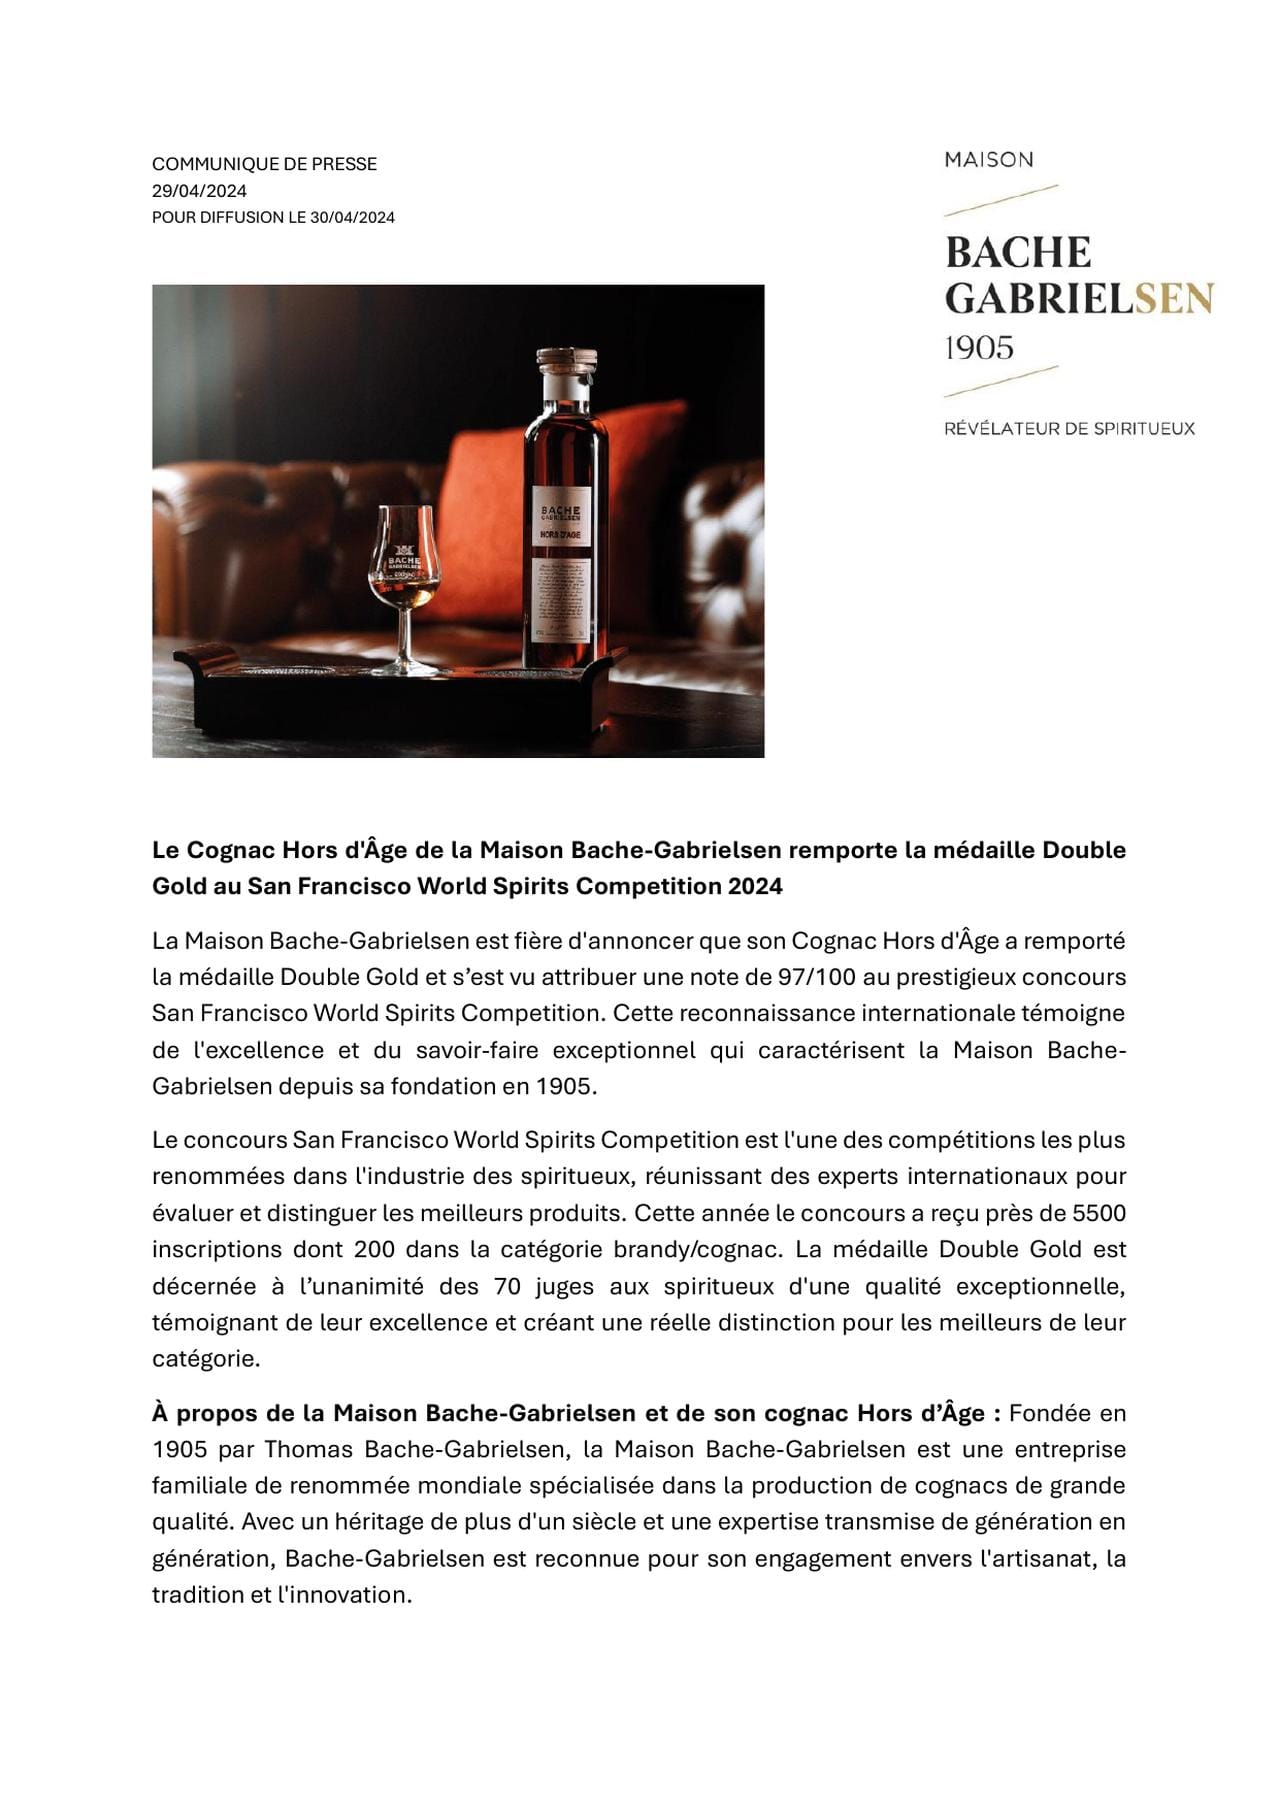 Le Cognac Hors d'Âge de la Maison Bache-Gabrielsen remporte la médaille Double Gold au San Francisco World Spirits Competition 2024